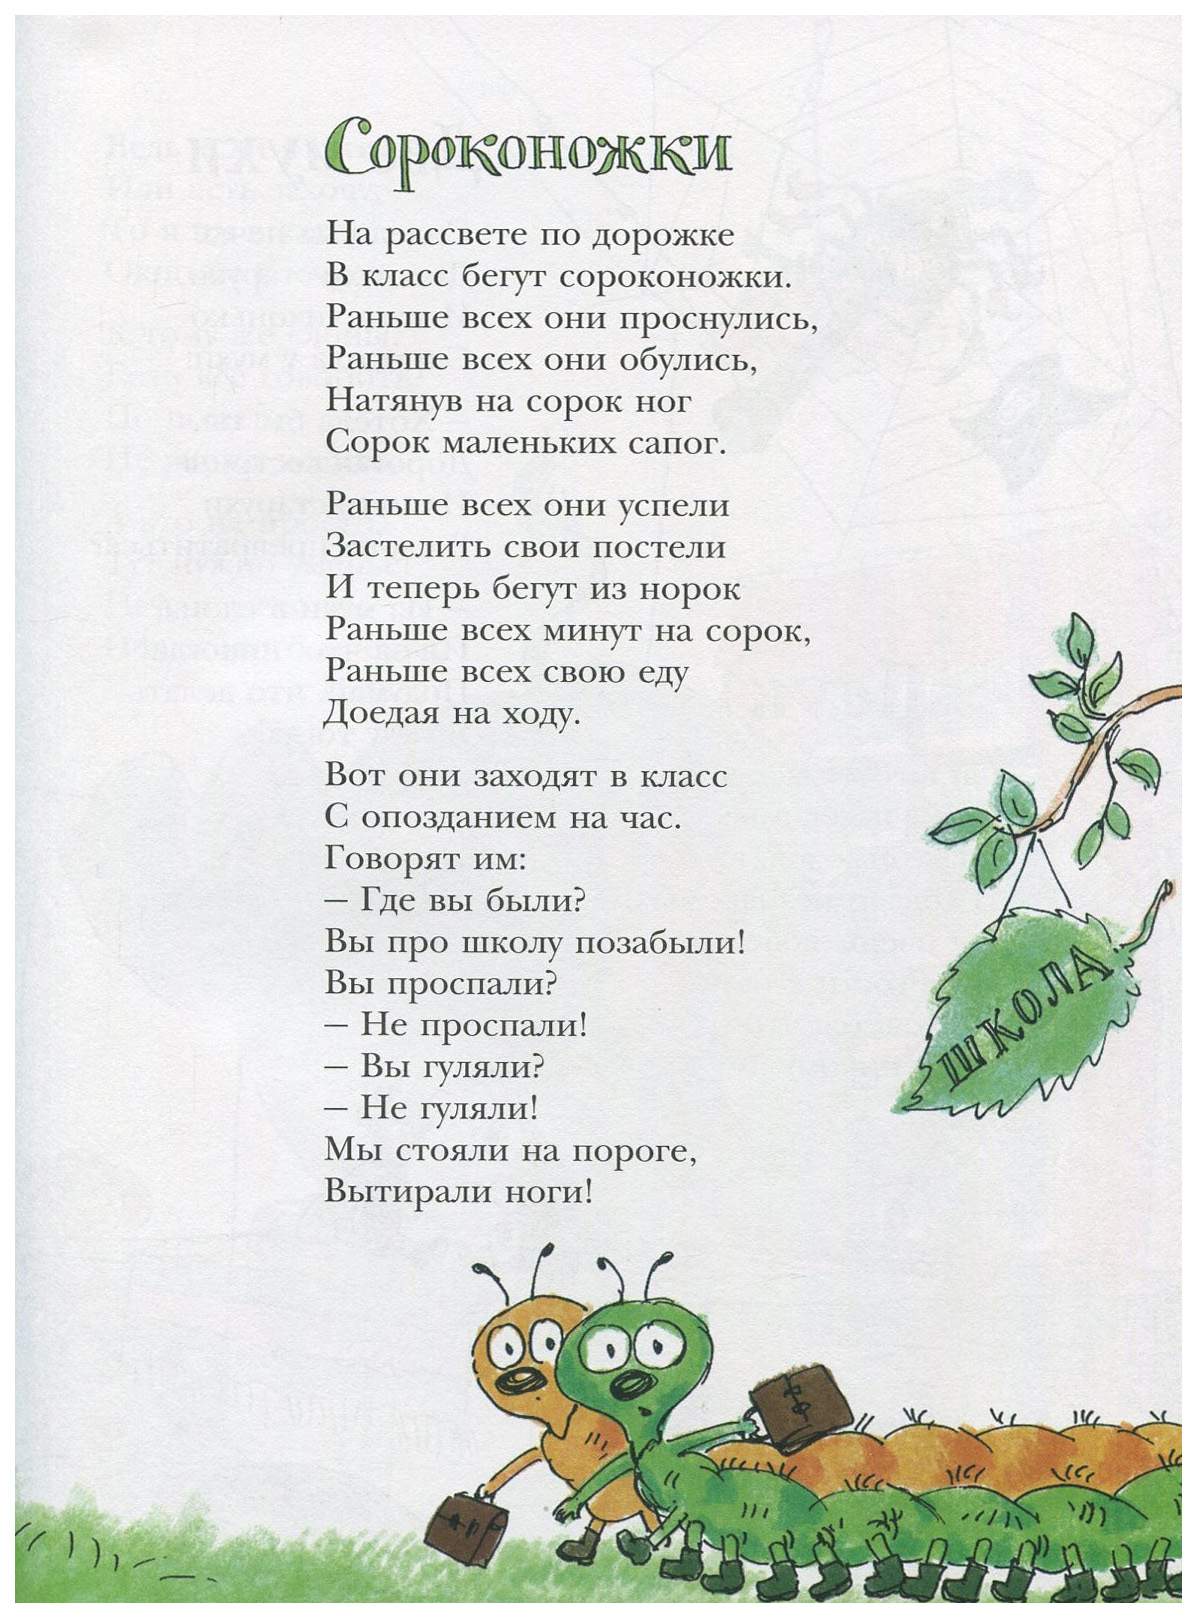 Стихотворение про сороконожку. В Орлов стихи для детей. Стишок детский про сороконожку. Стихи Орлова для детей.